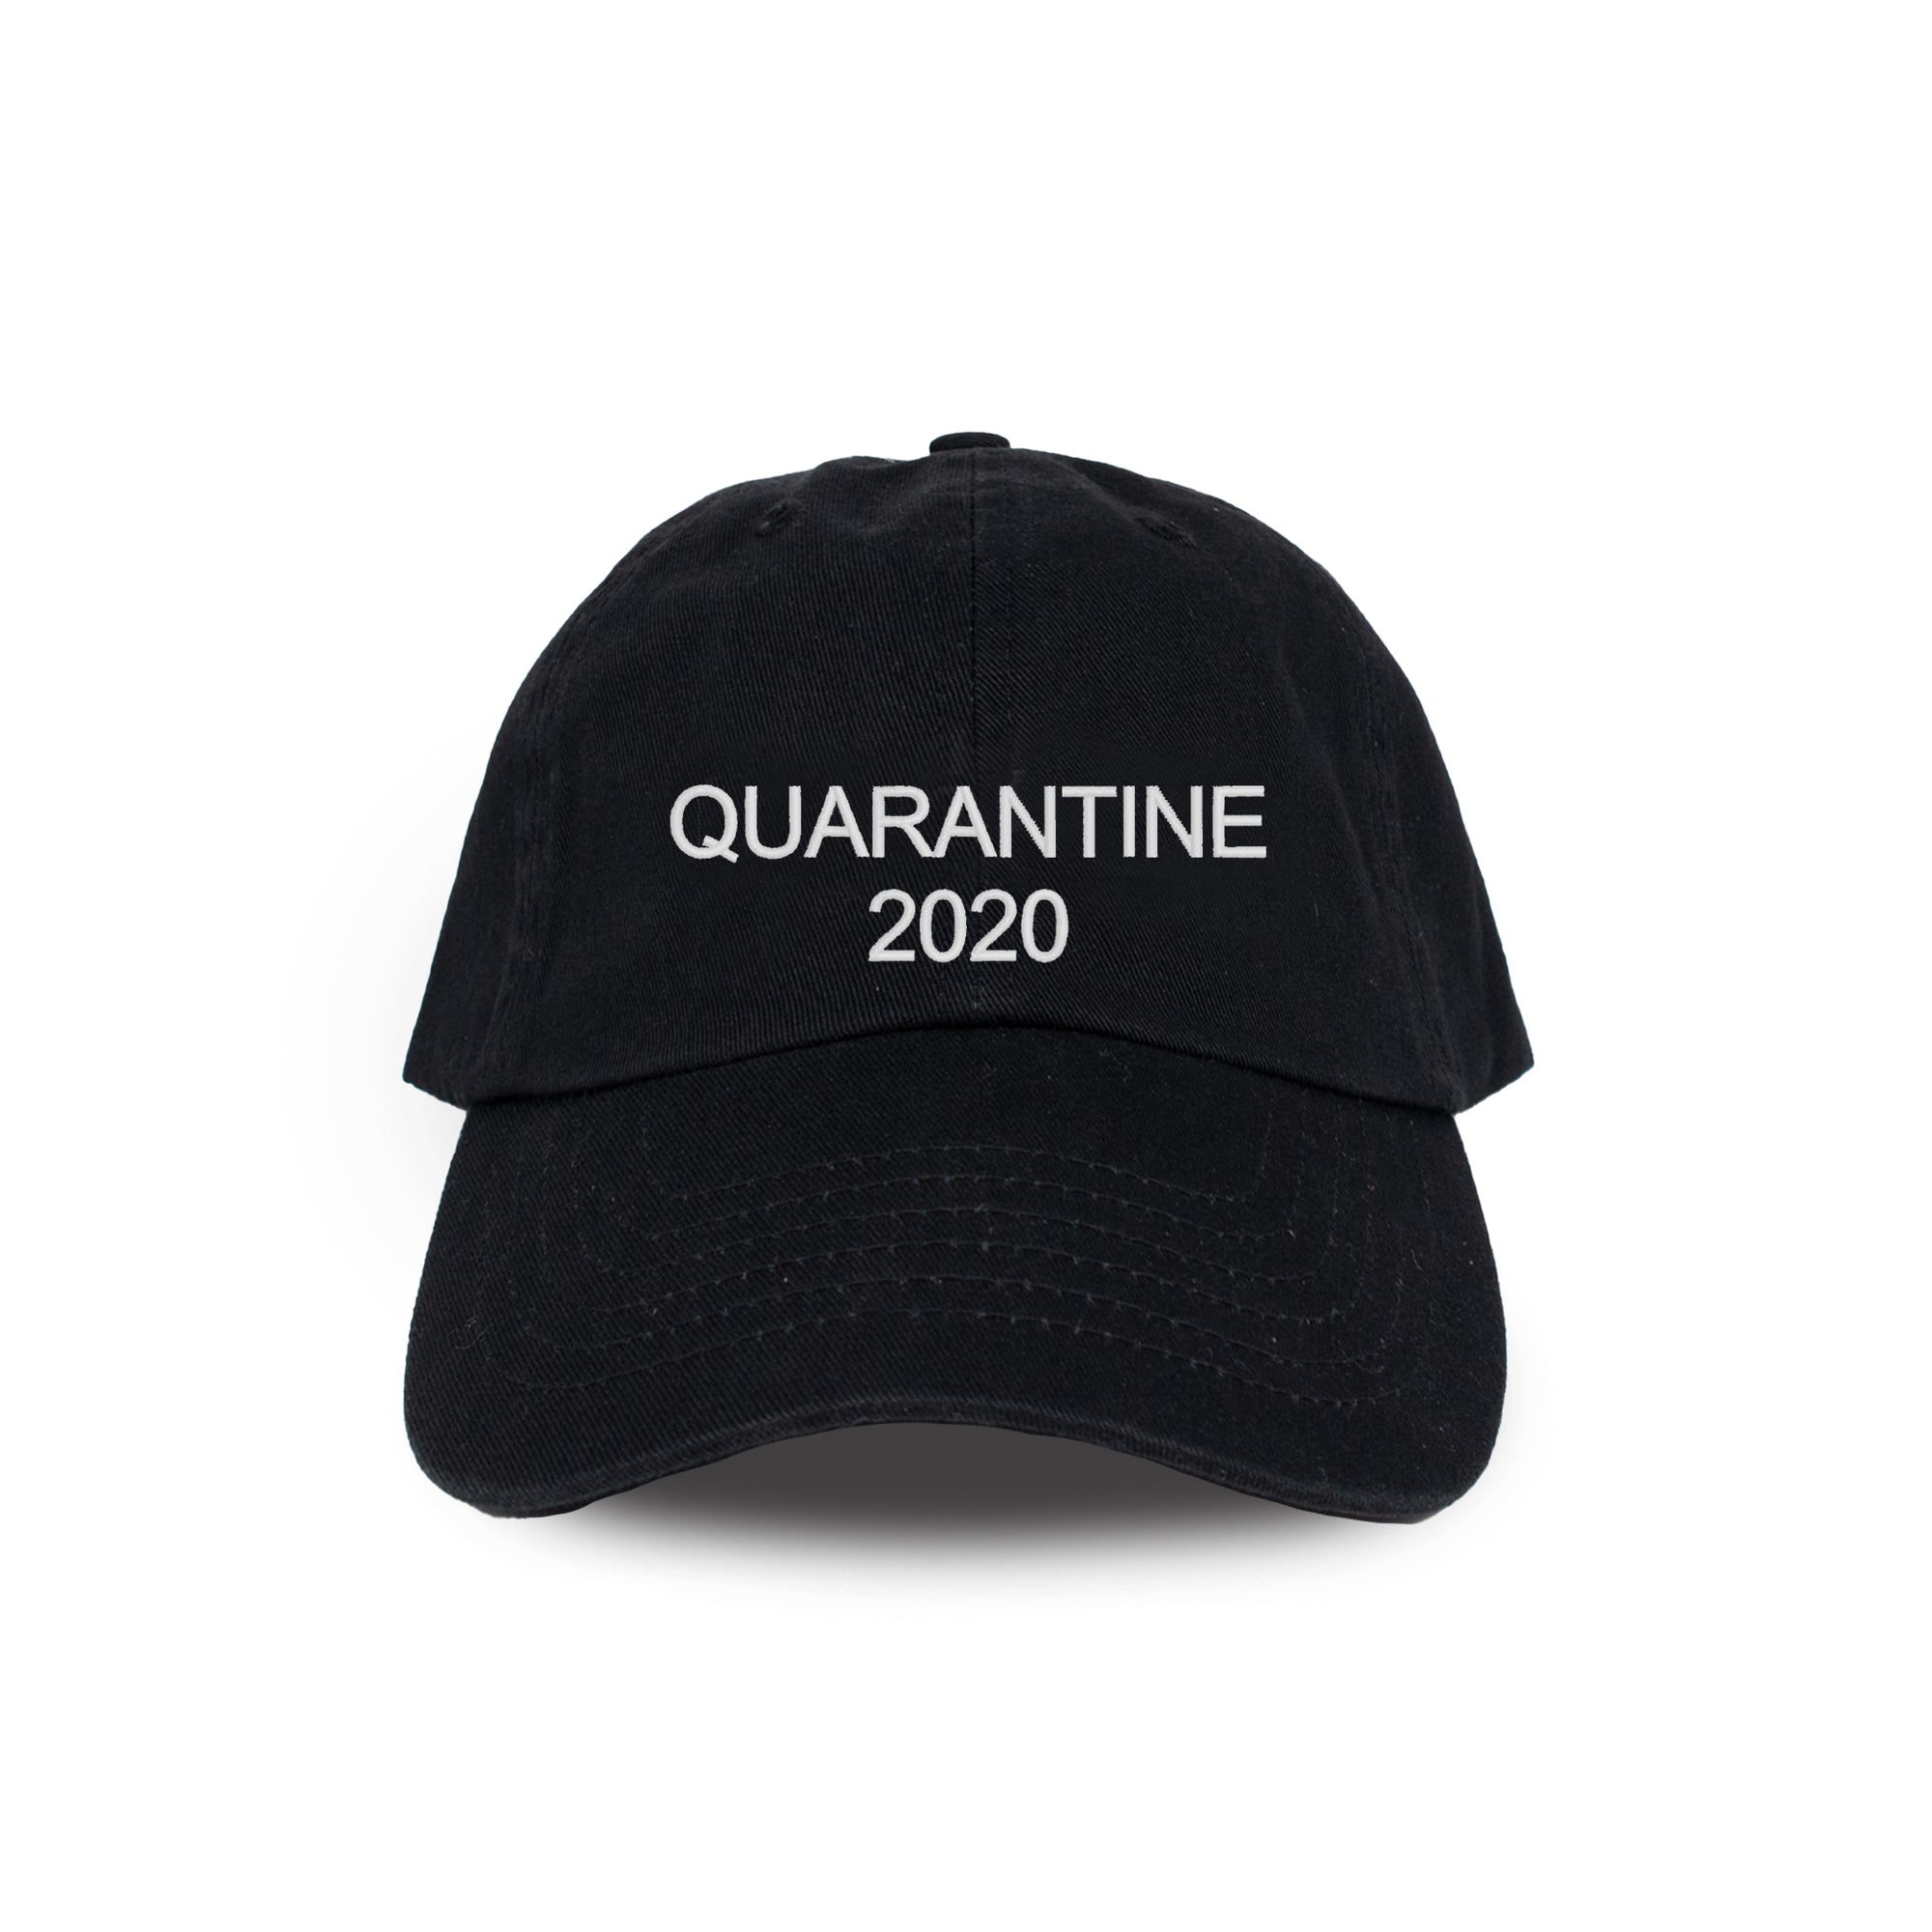 QUARANTINE 2020